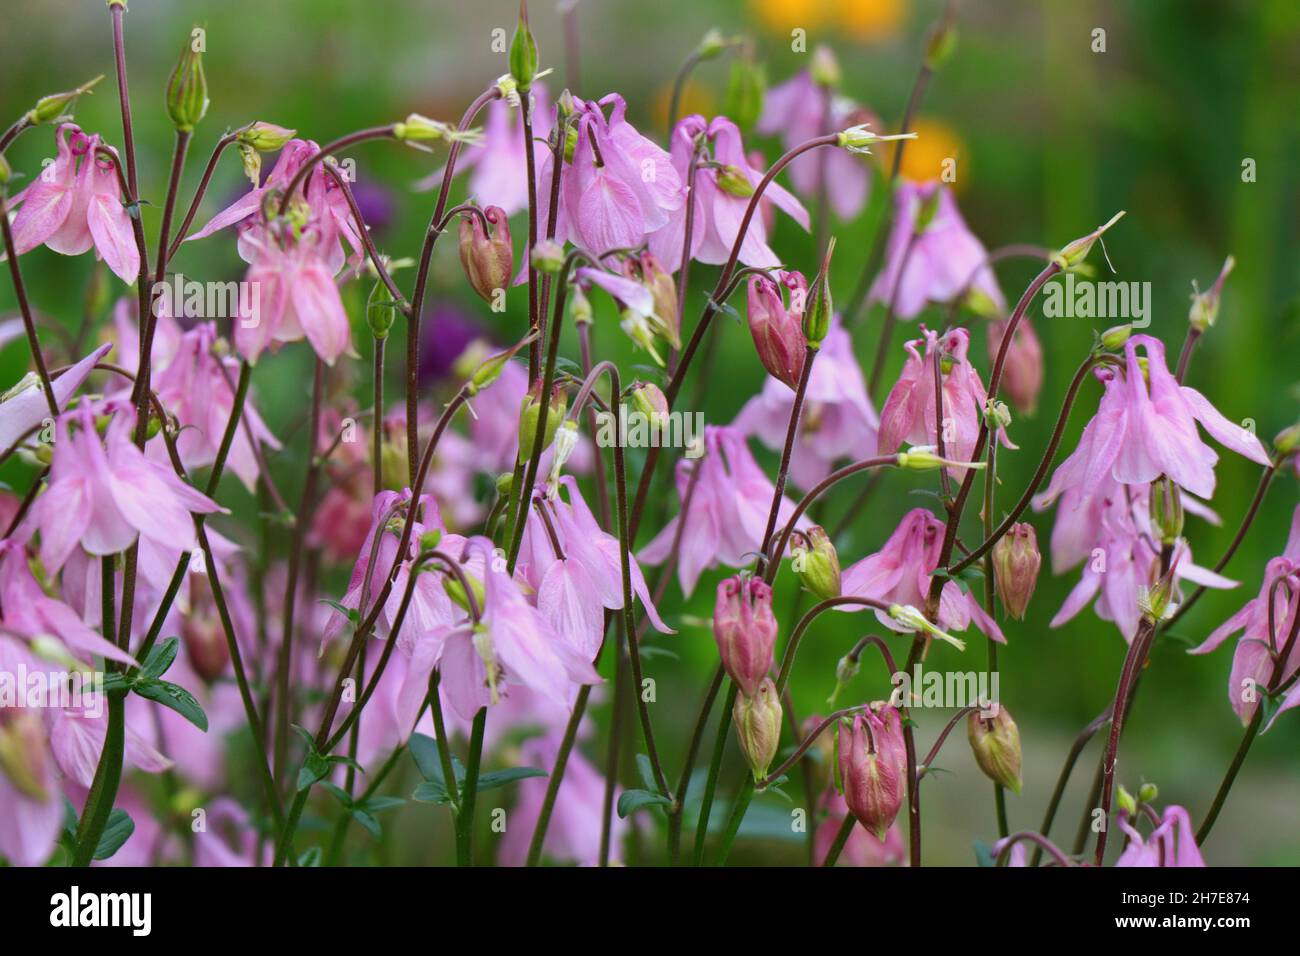 Blooming of Aquilegia vulgaris flowers in the garden Stock Photo